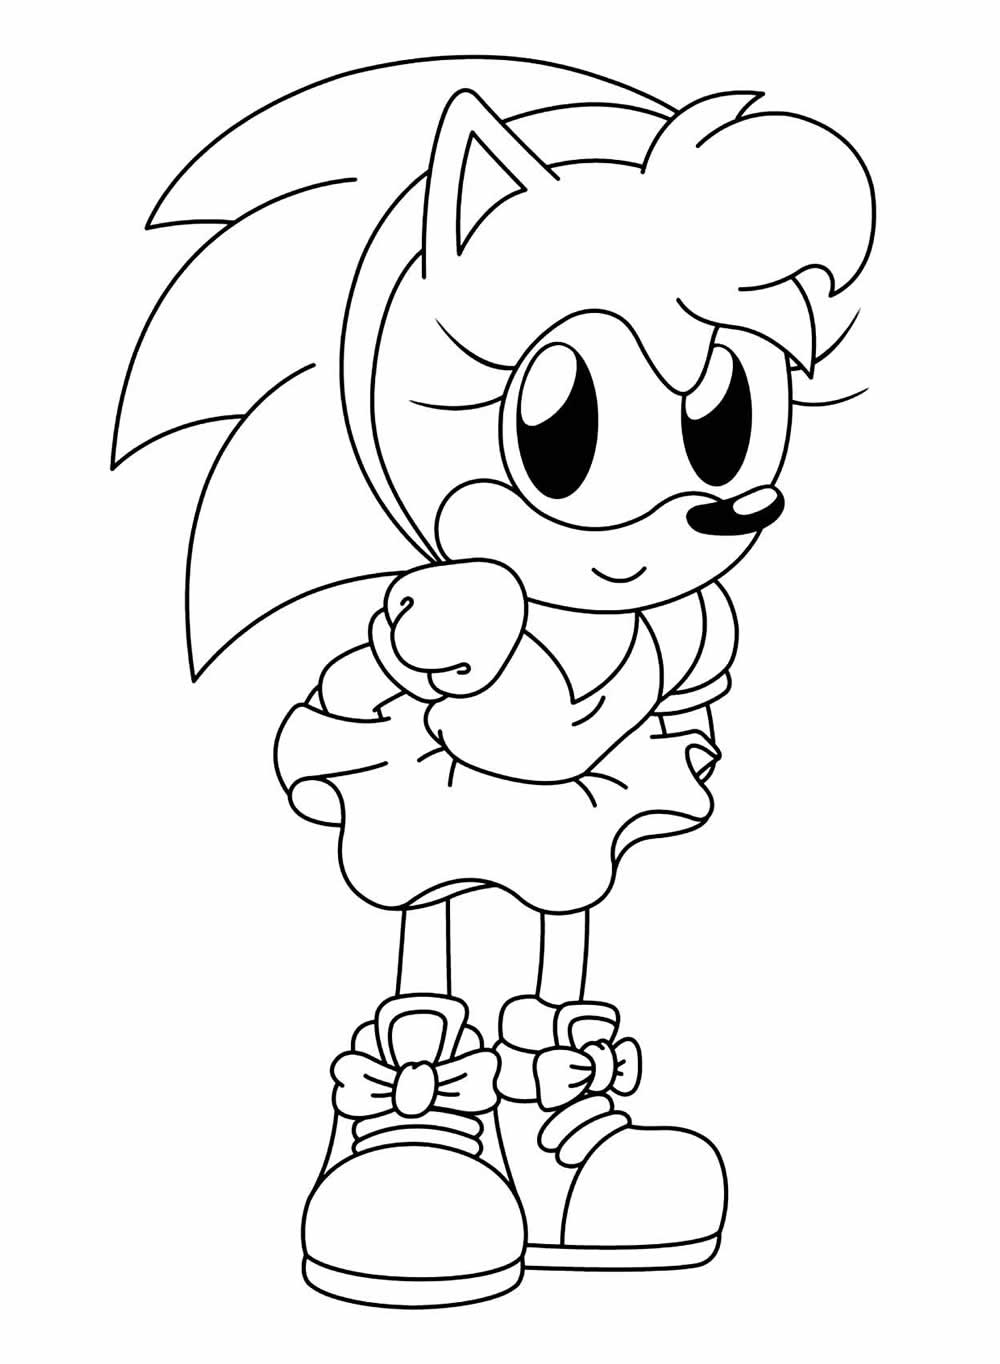 Desenho para colorir de personagem do Sonic